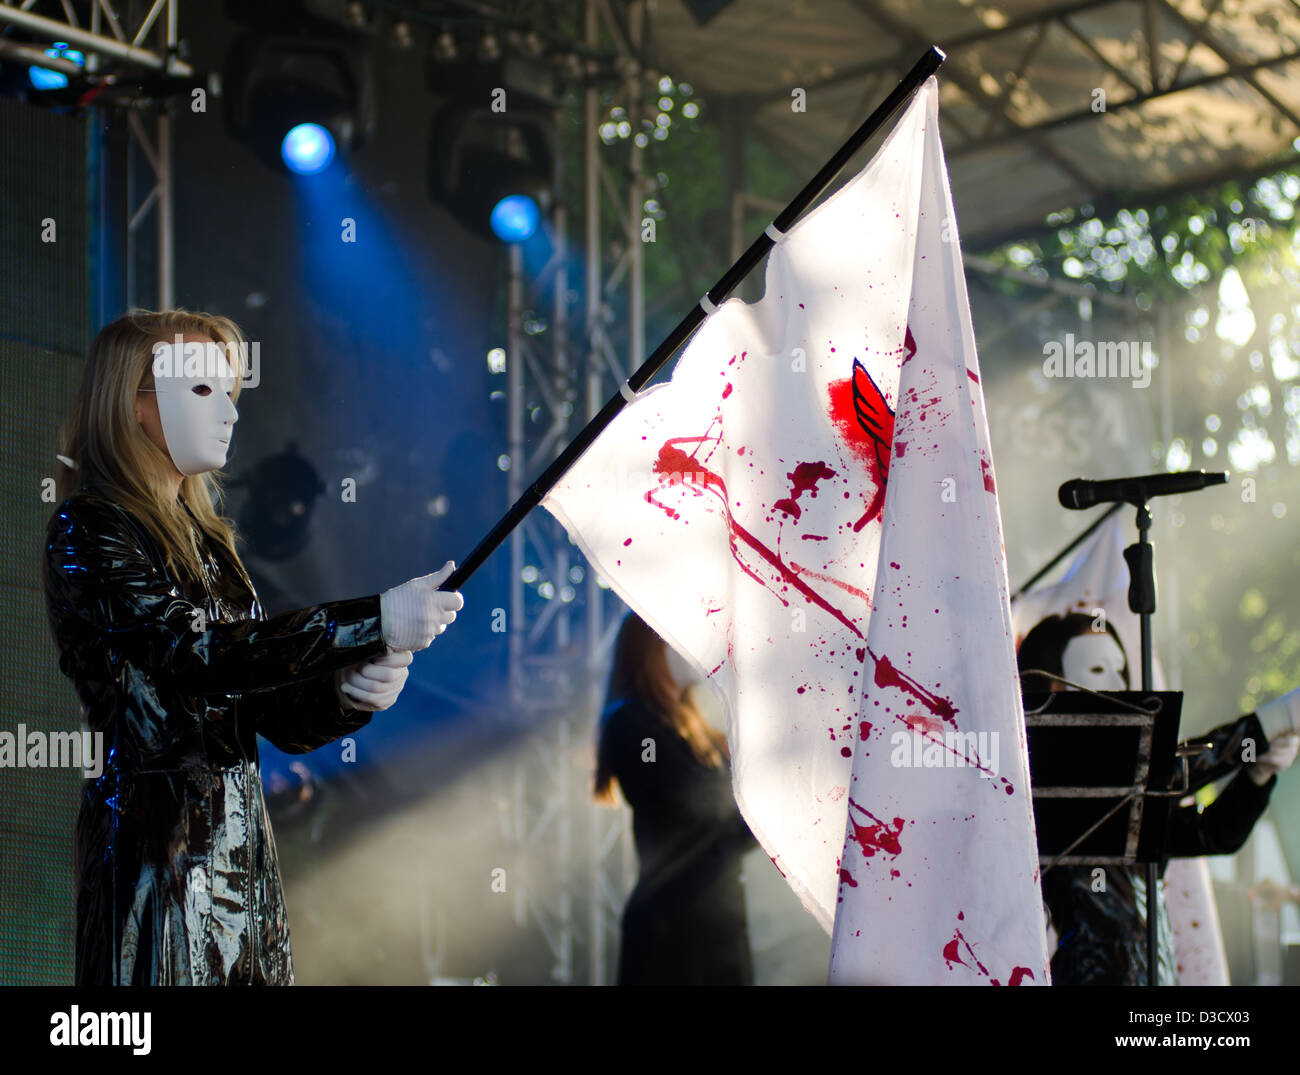 Danseurs masqués de la bande de goth allemand Blutengel portant des drapeaux sur scène à l'Amphi Festival 2012 Banque D'Images